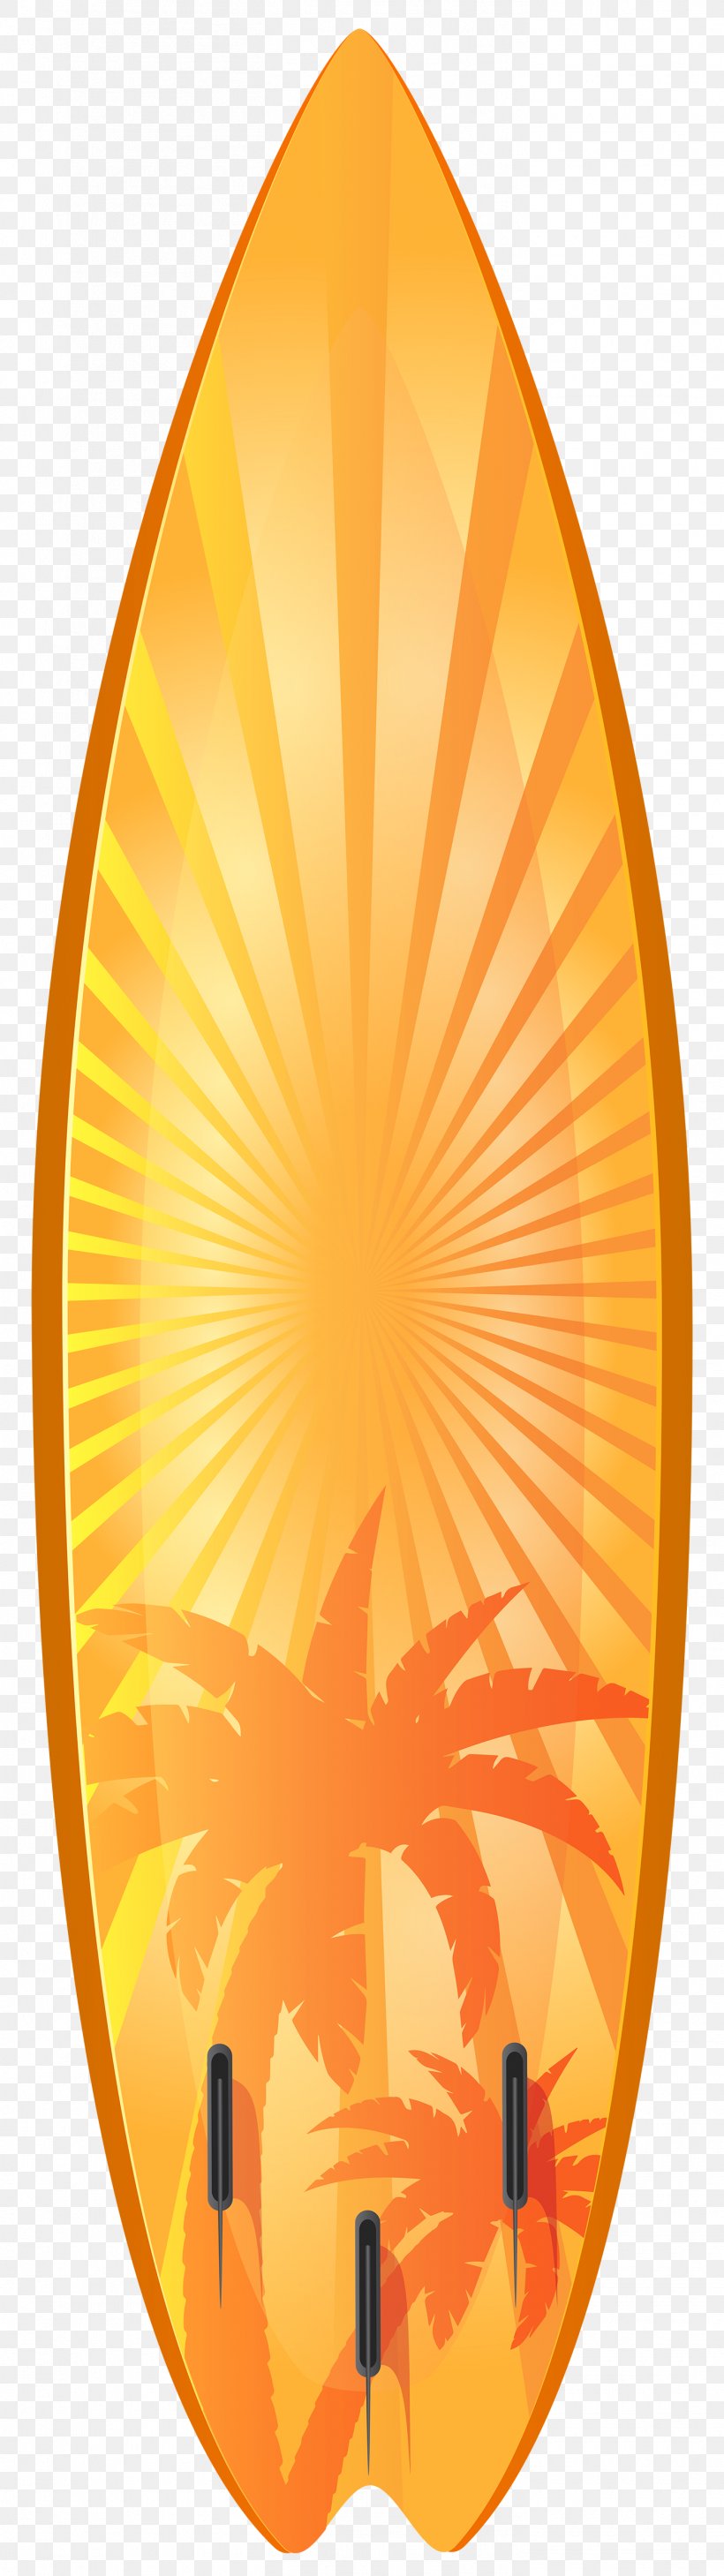 Surfboard Surfing Clip Art, PNG, 1405x5000px, Surfboard, Document, Openoffice Draw, Orange, Surfboard Shaper Download Free